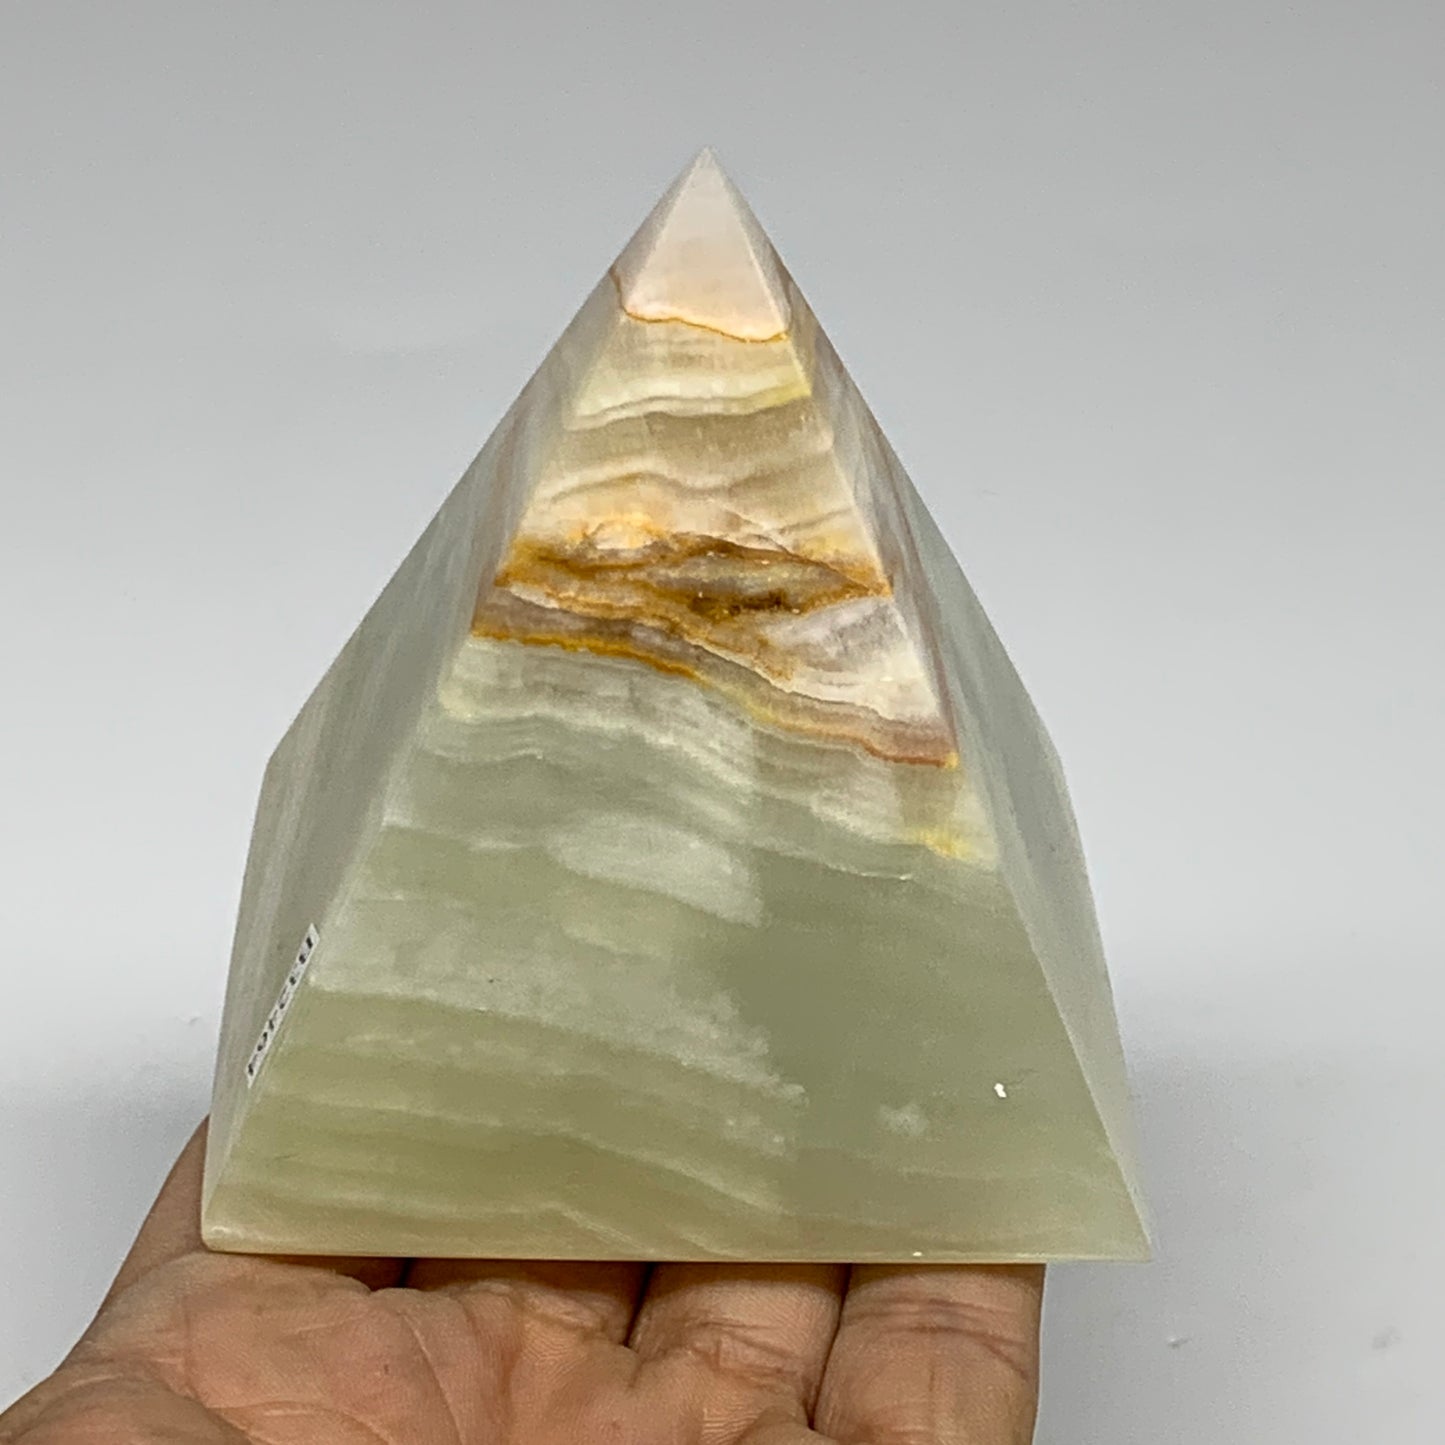 0.93 lbs, 3"x2.9"x2.9", Green Onyx Pyramid Gemstone Crystal, B32464